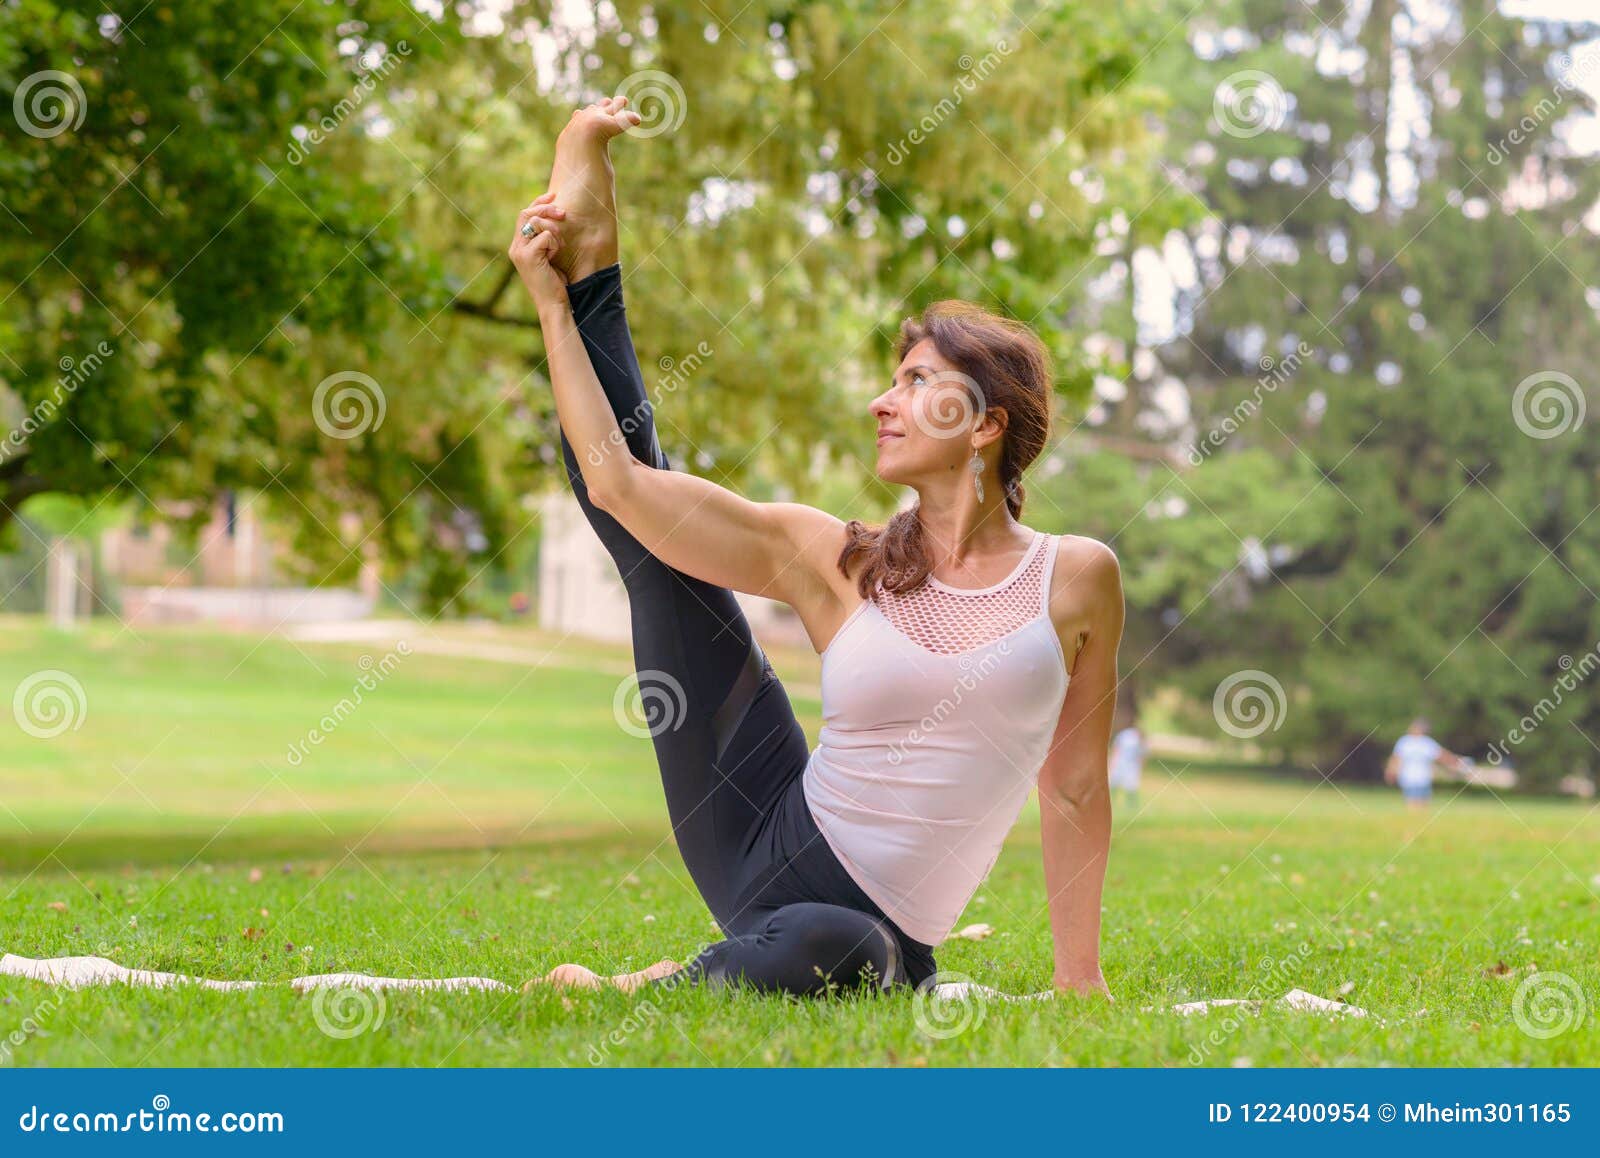 Female Yoga Artist Doing Leg Exercises In Meadow Stock